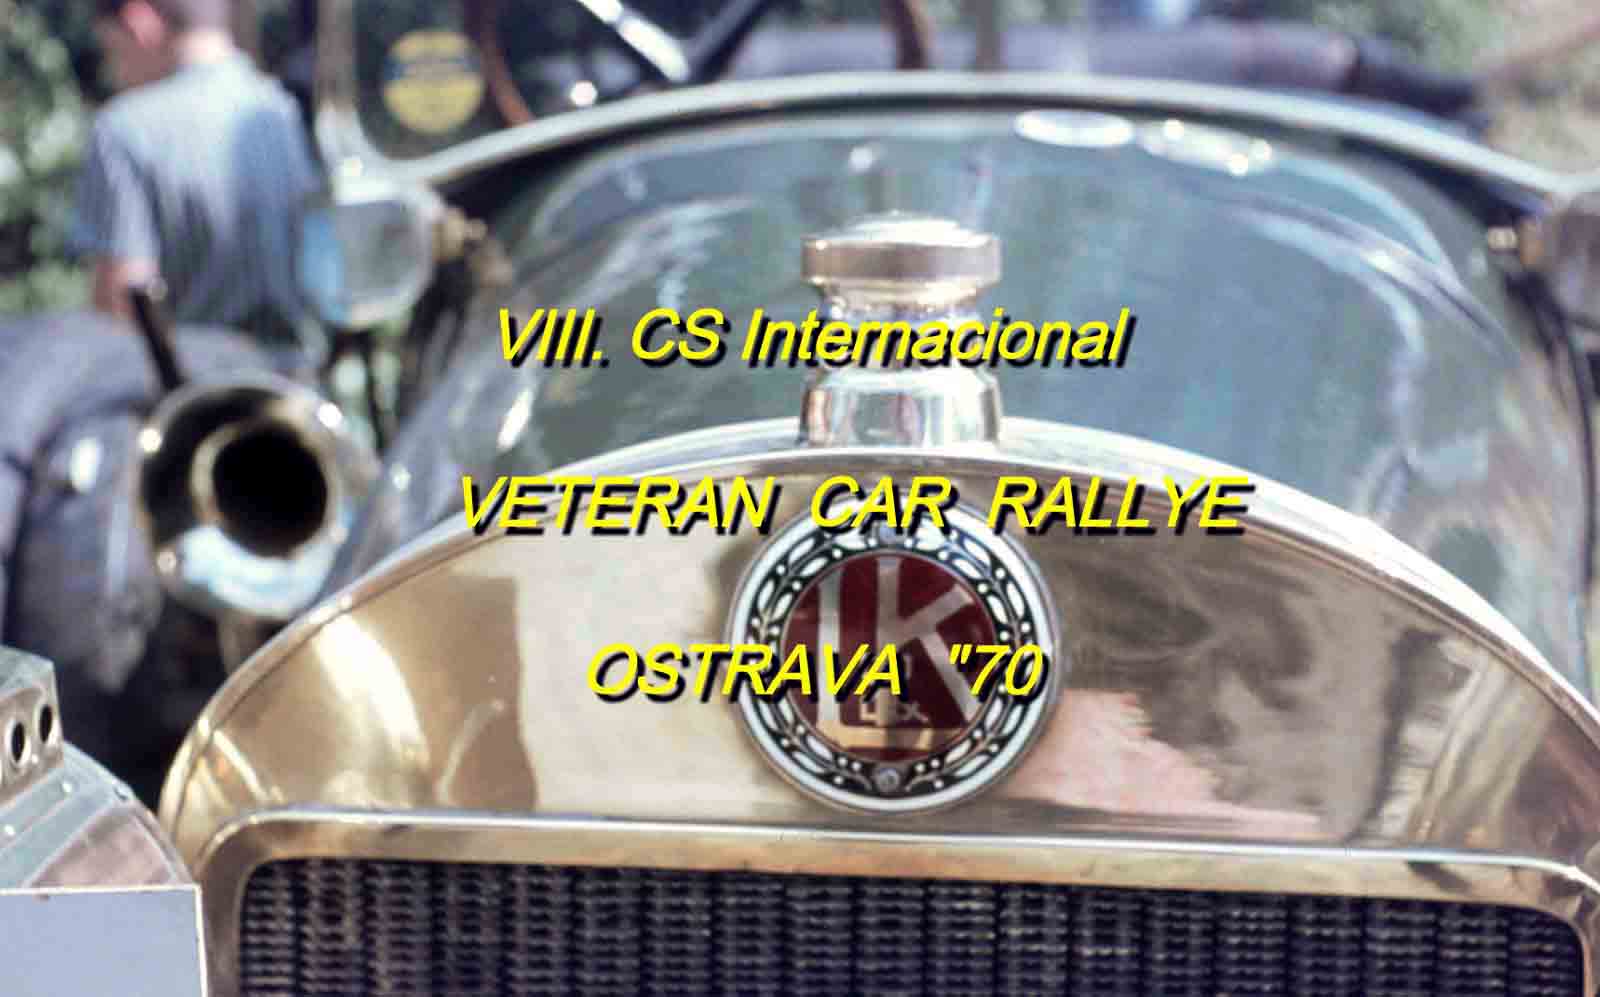 Veteran car rallye OSTRAVA 1970.jpg